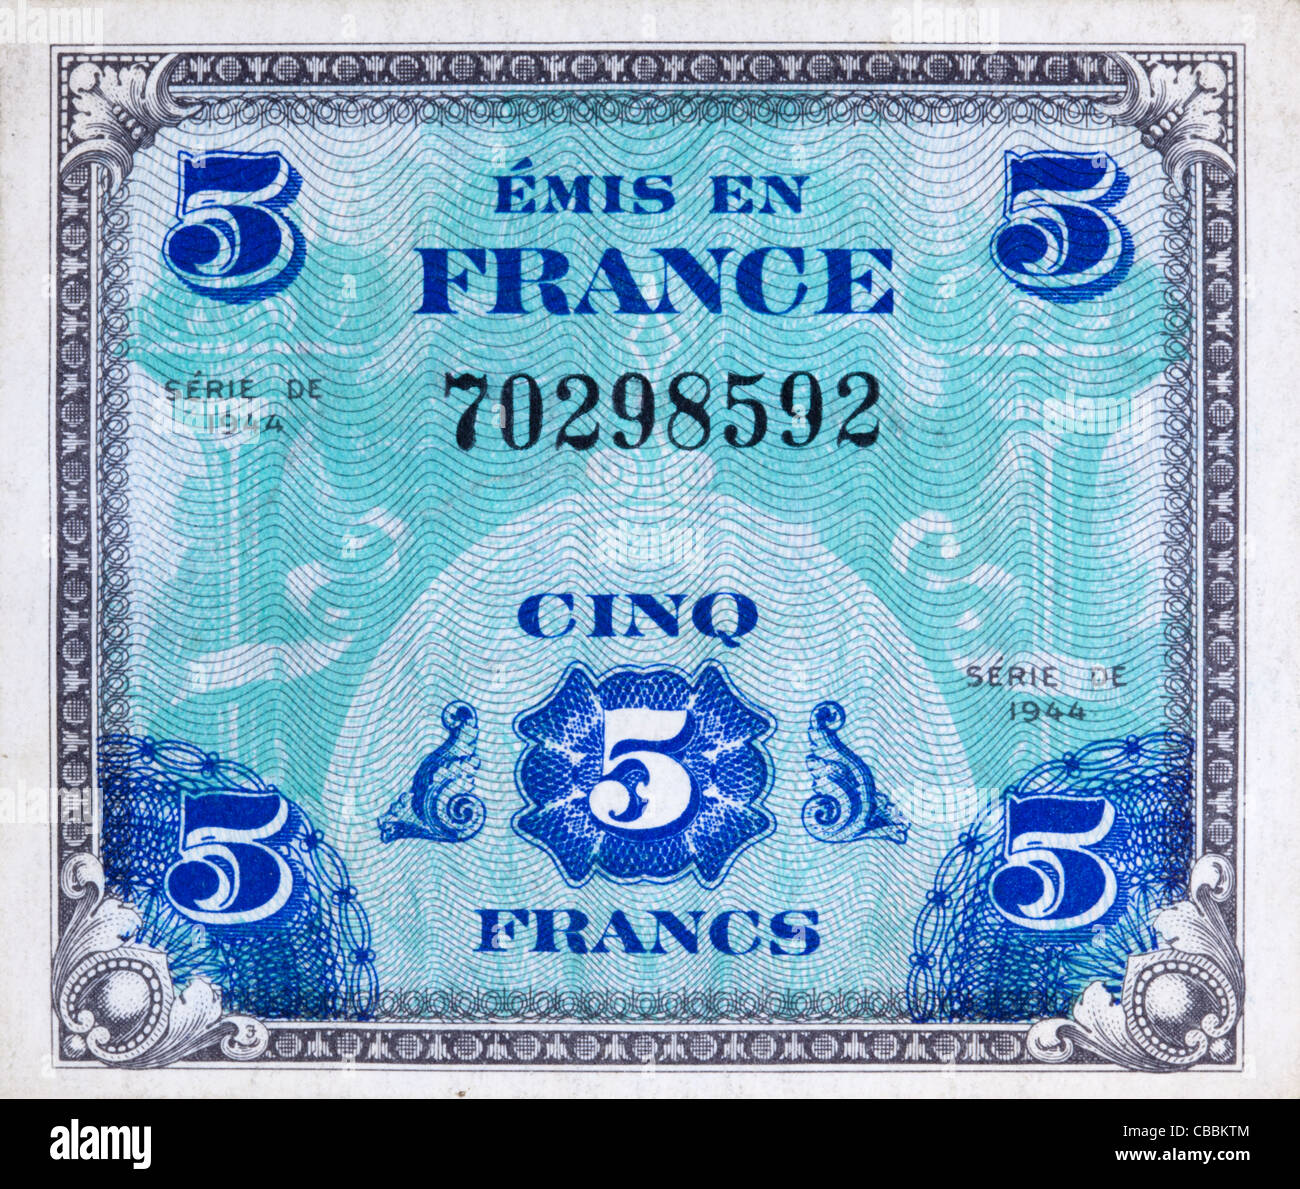 Vorderseite der 1944 zusätzliche französische Francwährung verwendet durch die Alliierten Streitkräfte in Europa während des zweiten Weltkriegs Stockfoto